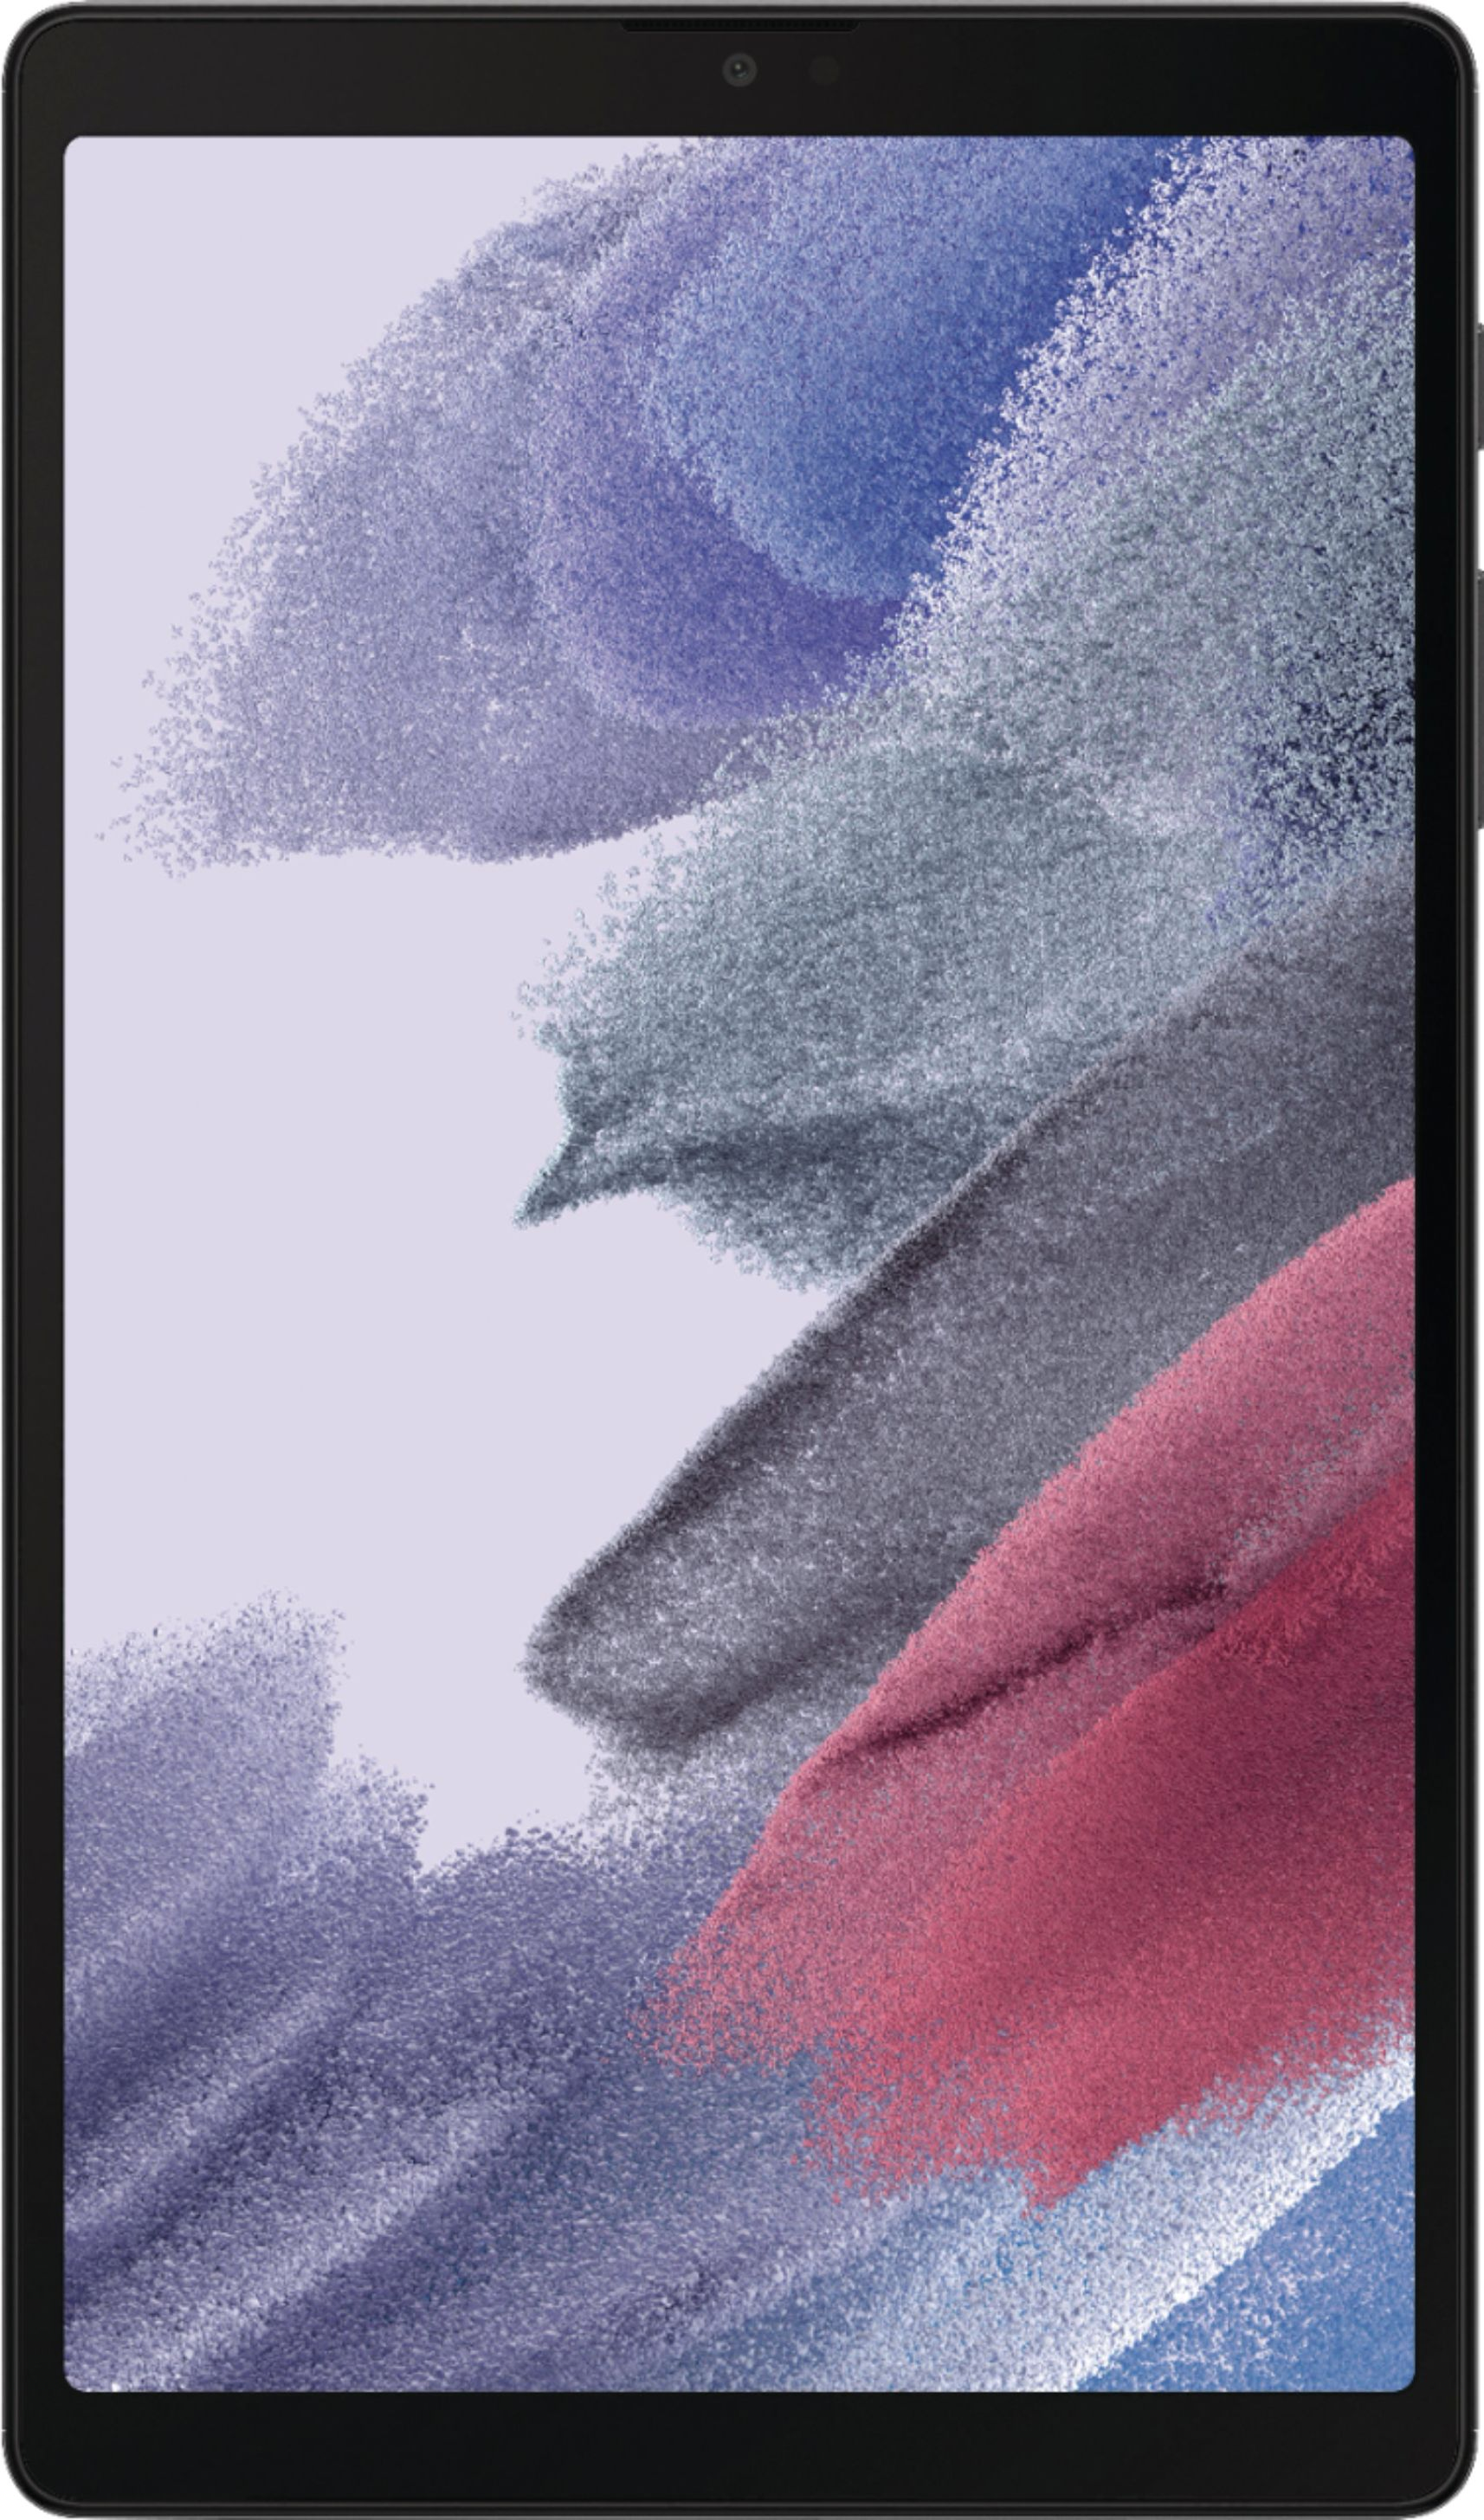 Samsung Galaxy Tab A7 Lite 8.7" 64 GB with Wi-Fi Dark Gray SM-T220NZAFXAR - Best Buy $149.99